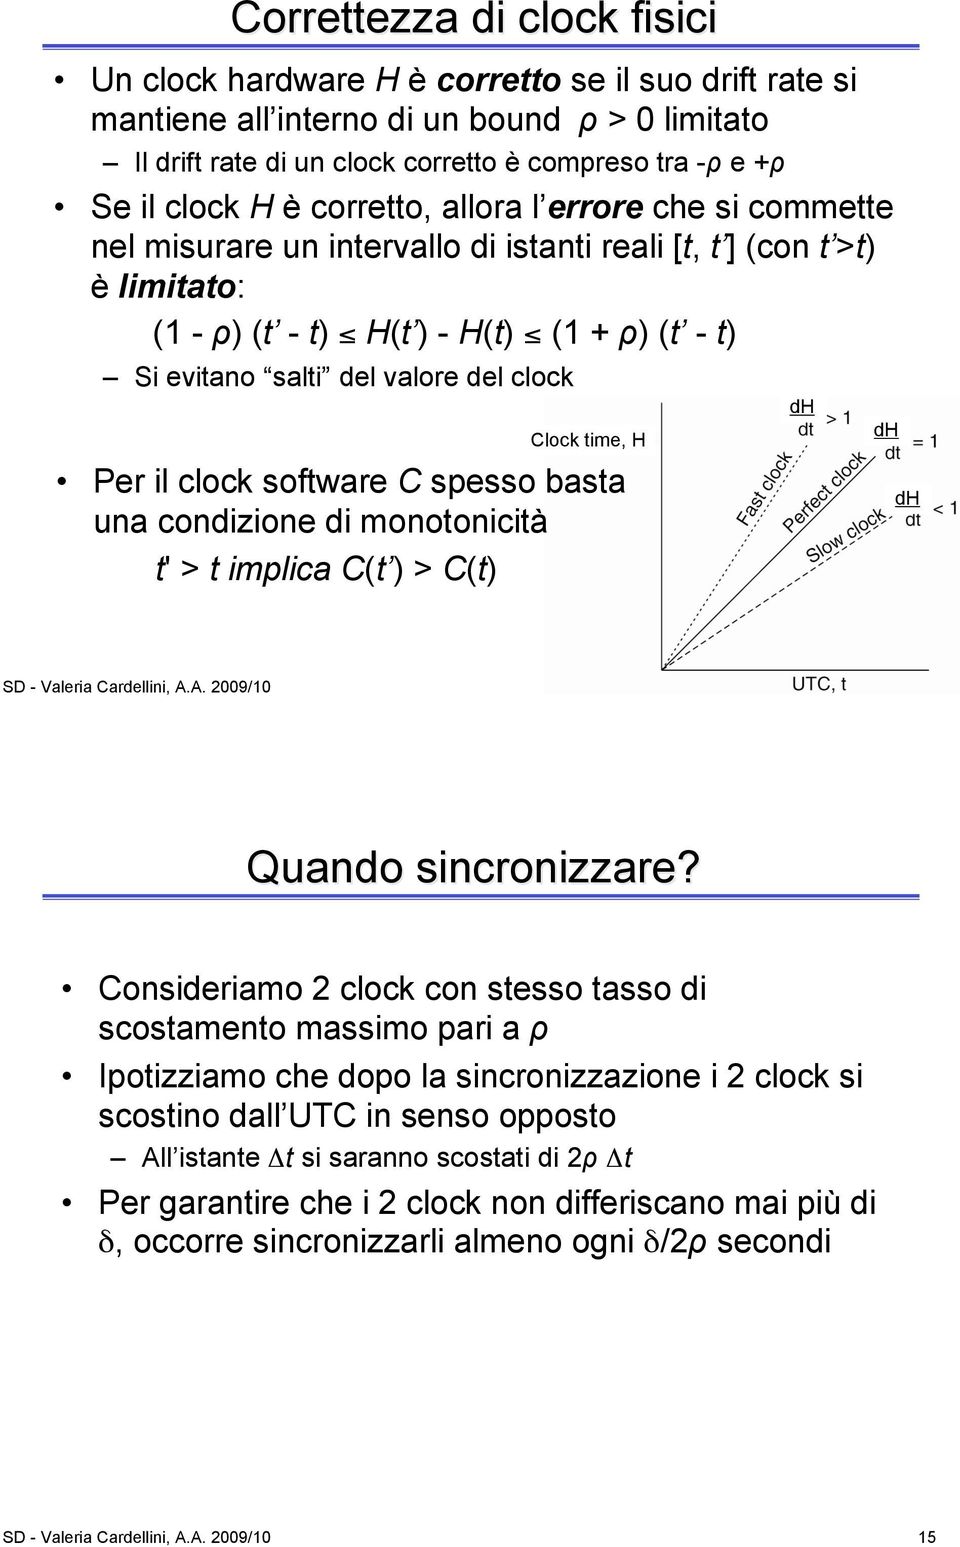 clock Clock time, H Per il clock software C spesso basta una condizione di monotonicità t' > t implica C(t ) > C(t) dh dh dh SD - Valeria Cardellini, A.A. 9/ Quando sincronizzare?